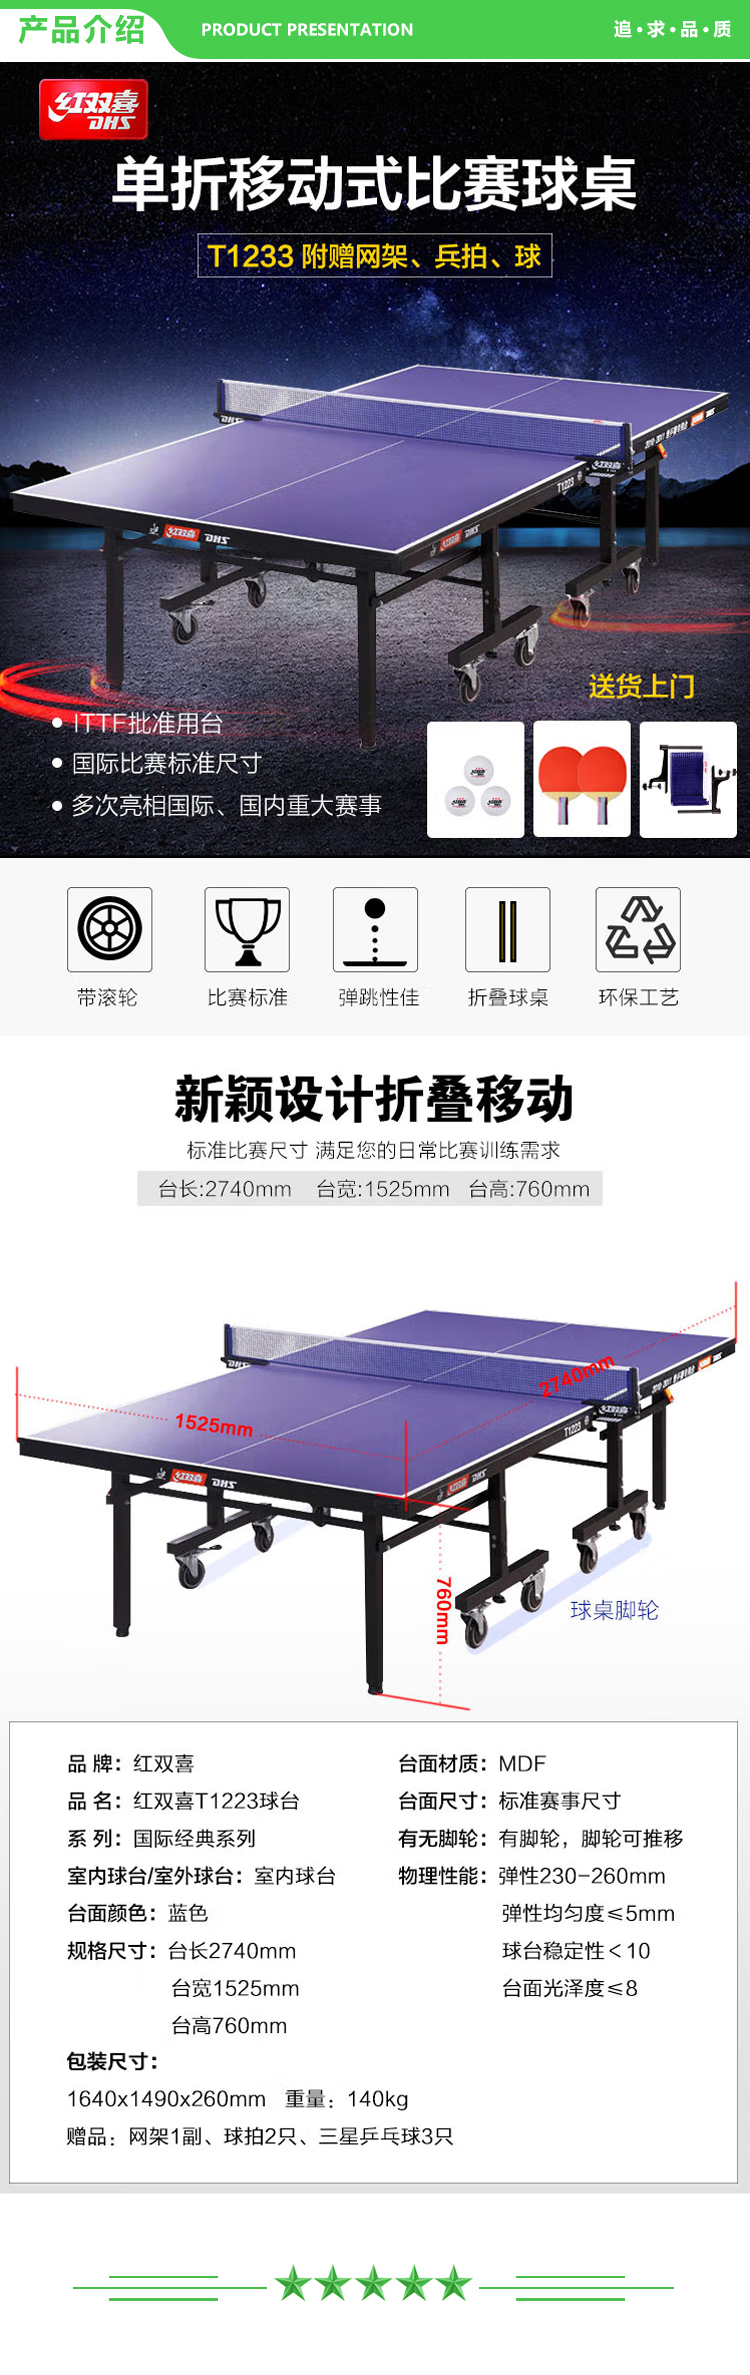 红双喜 DHS T1223 乒乓球台 折叠移动式专业比赛乒乓球桌(附网架、兵拍、球)  (2).jpg